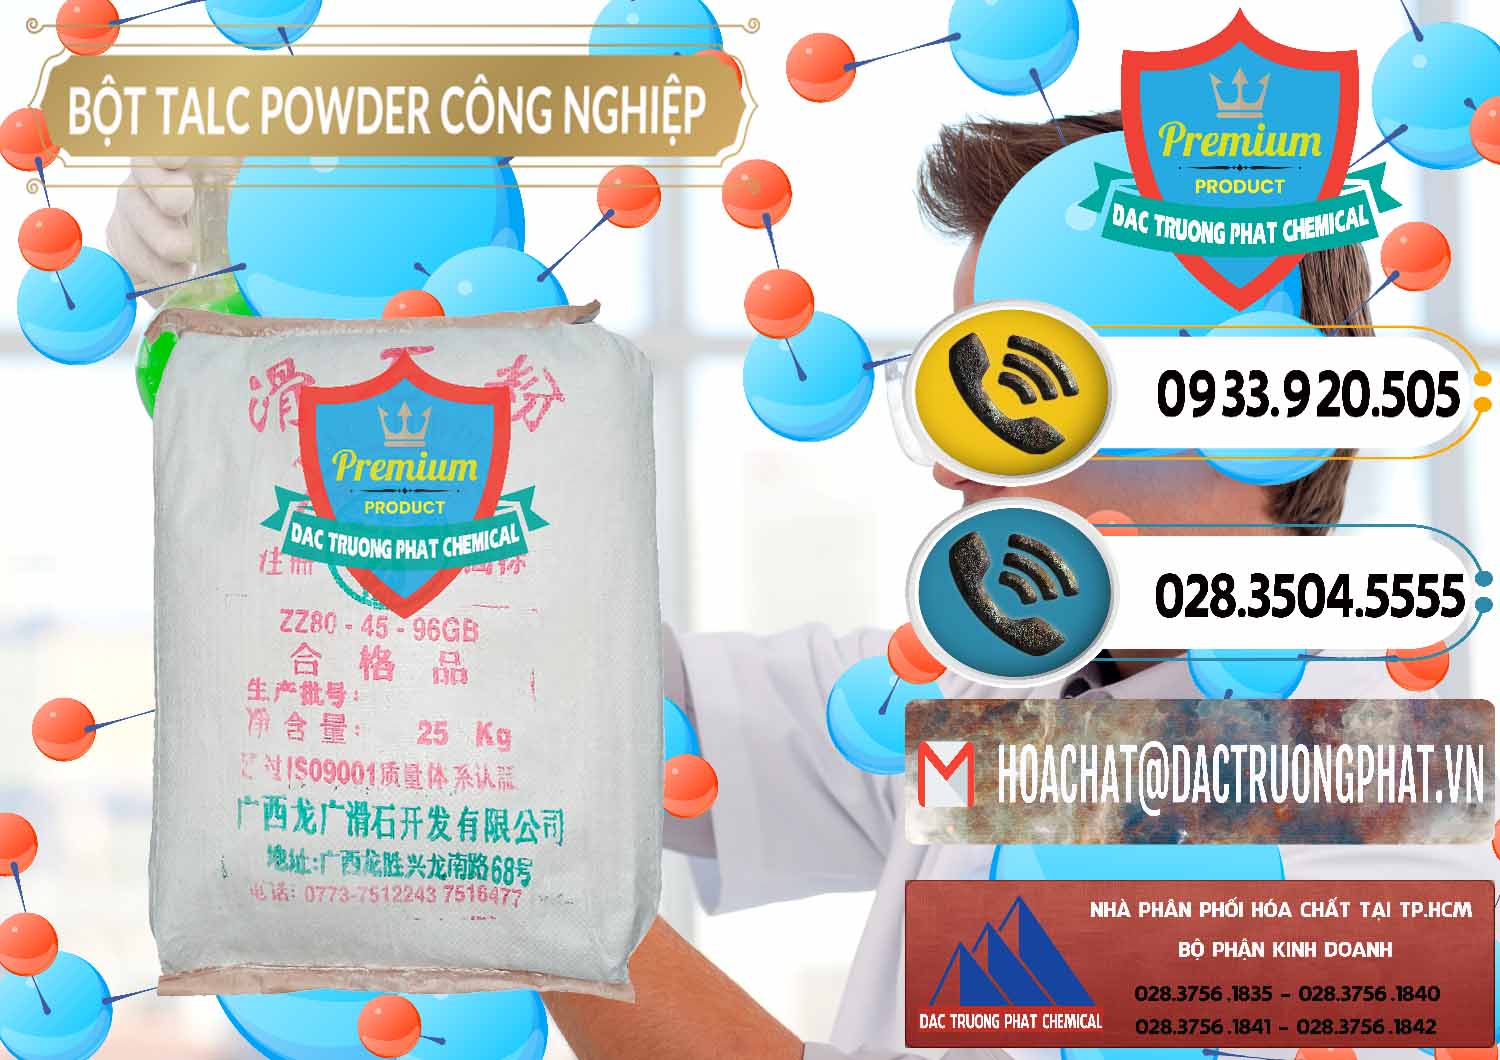 Đơn vị phân phối và bán Bột Talc Powder Công Nghiệp Trung Quốc China - 0037 - Nơi chuyên cung ứng và phân phối hóa chất tại TP.HCM - hoachatdetnhuom.vn